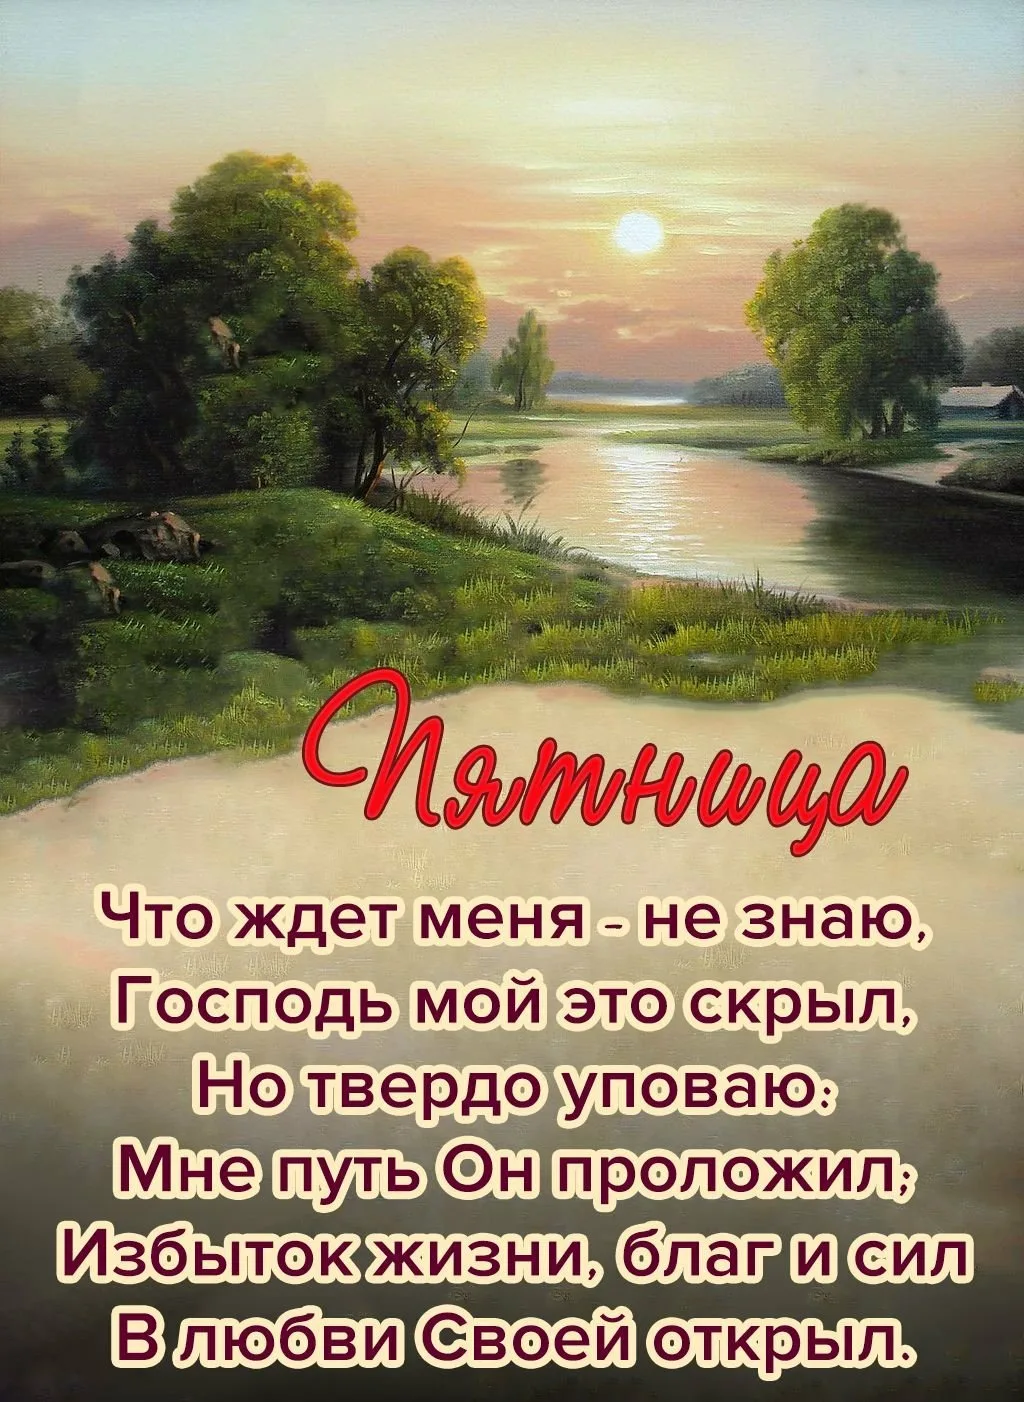 Фото Православное пожелание доброго утра #27